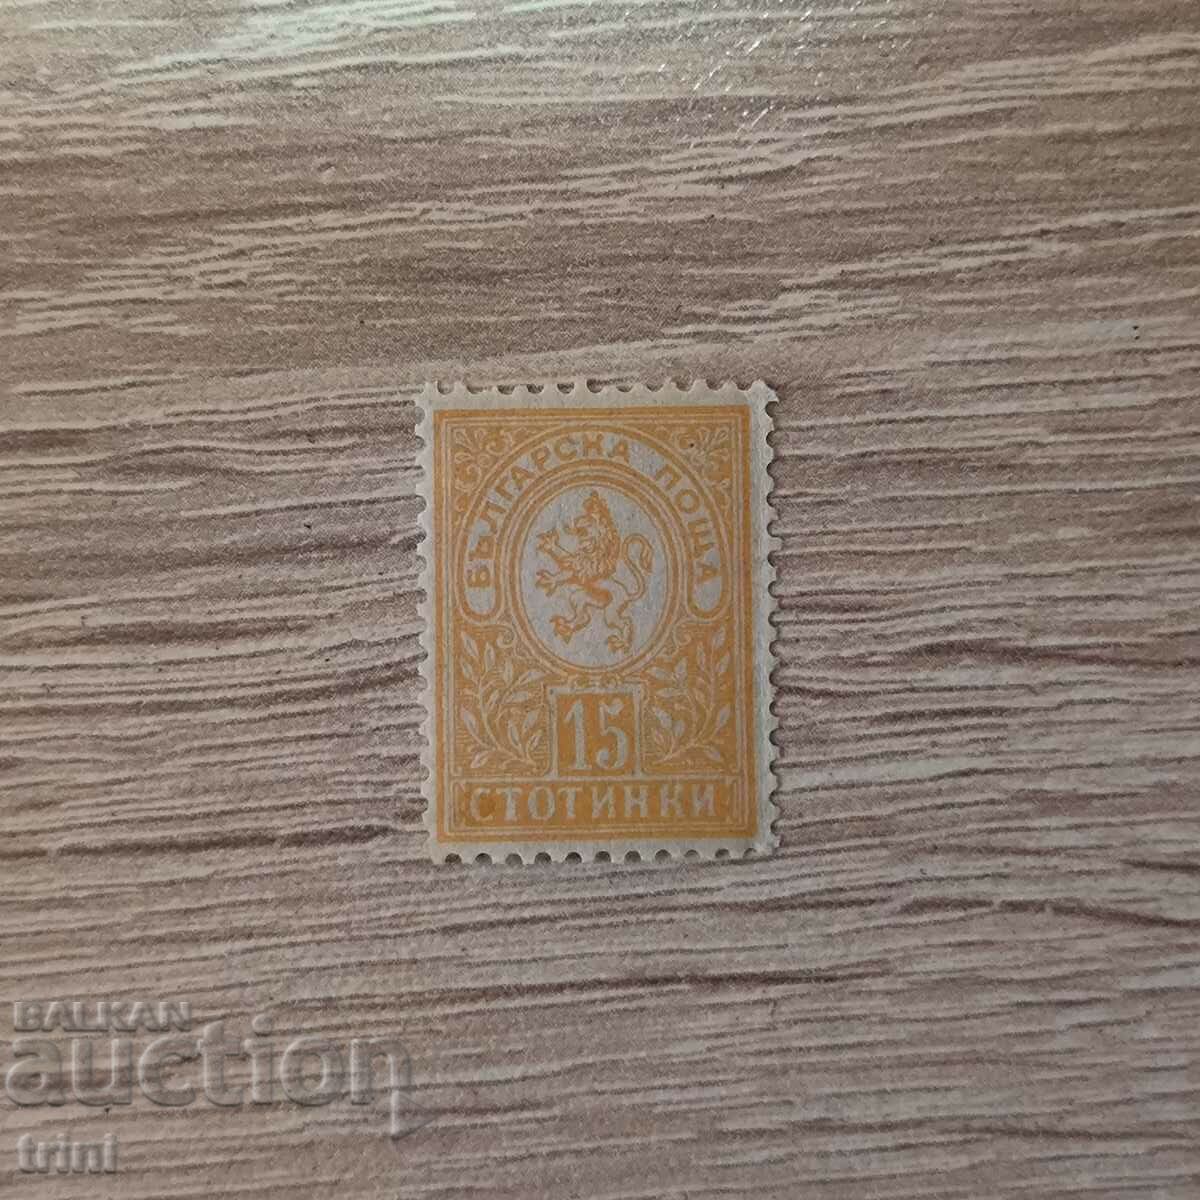 Βουλγαρία Μικρό λιοντάρι 1889 15 σεντς καθαρό